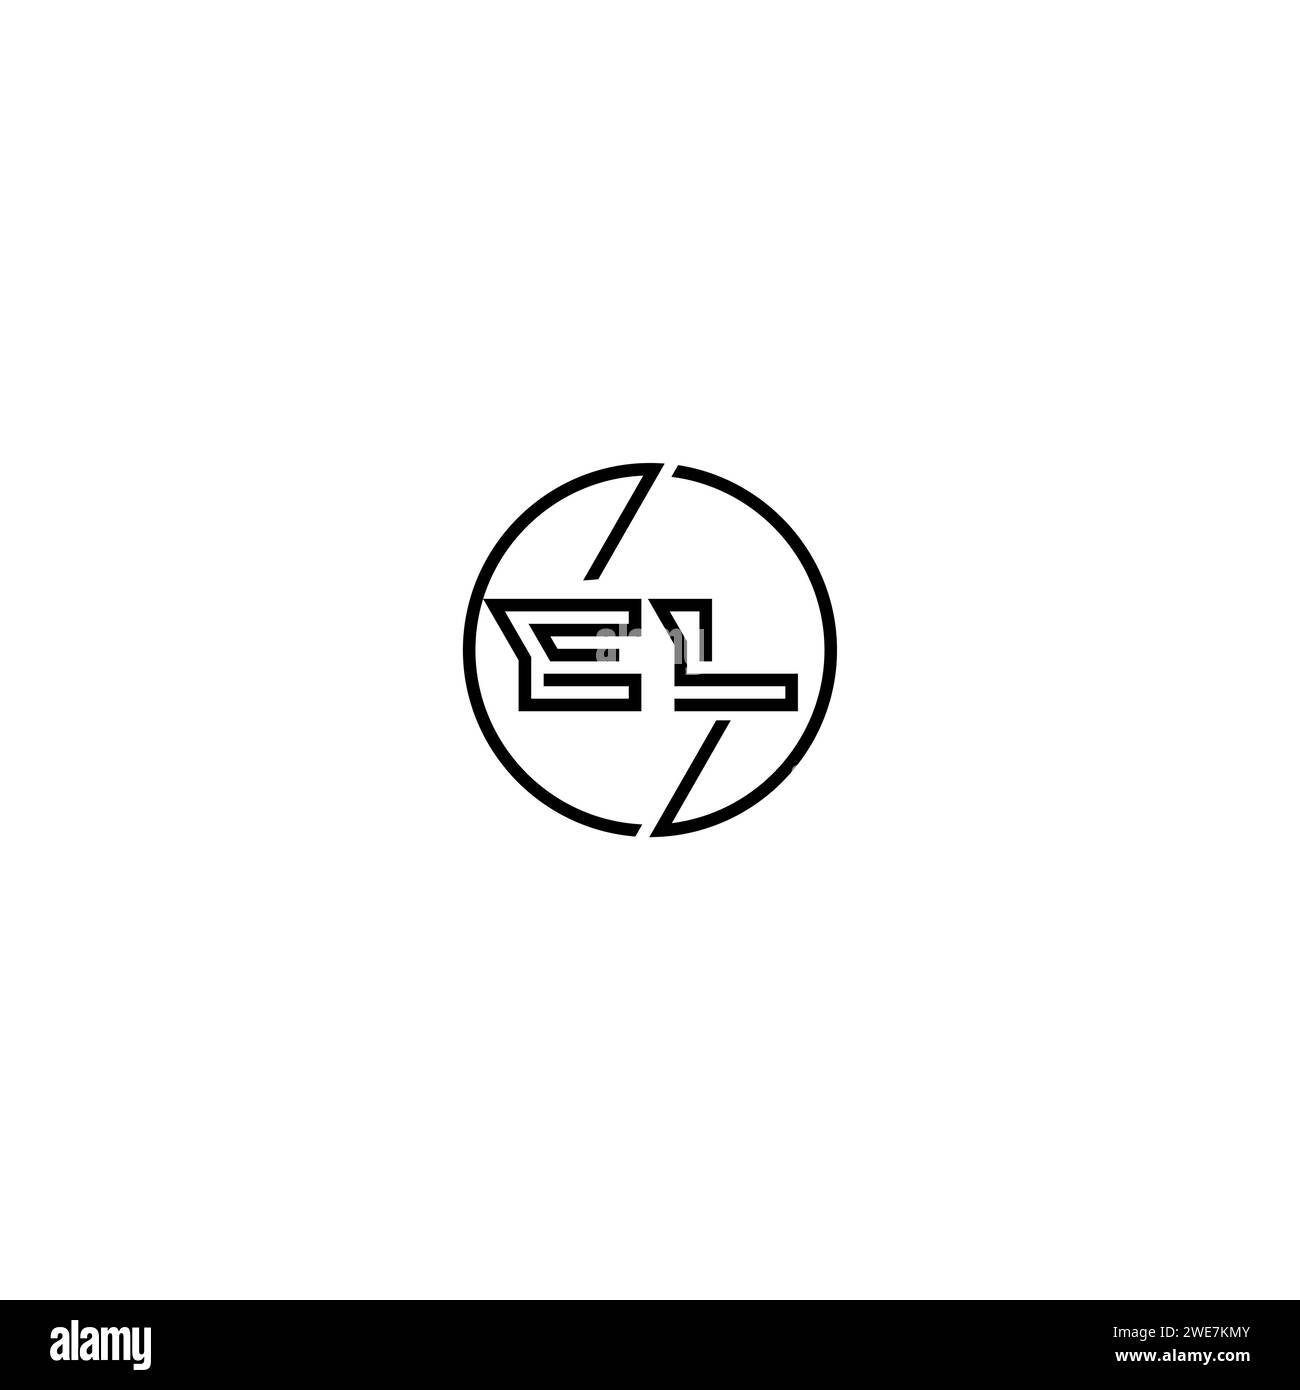 EL simple contour concept logo et cercle de conception initiale fond noir et blanc Illustration de Vecteur